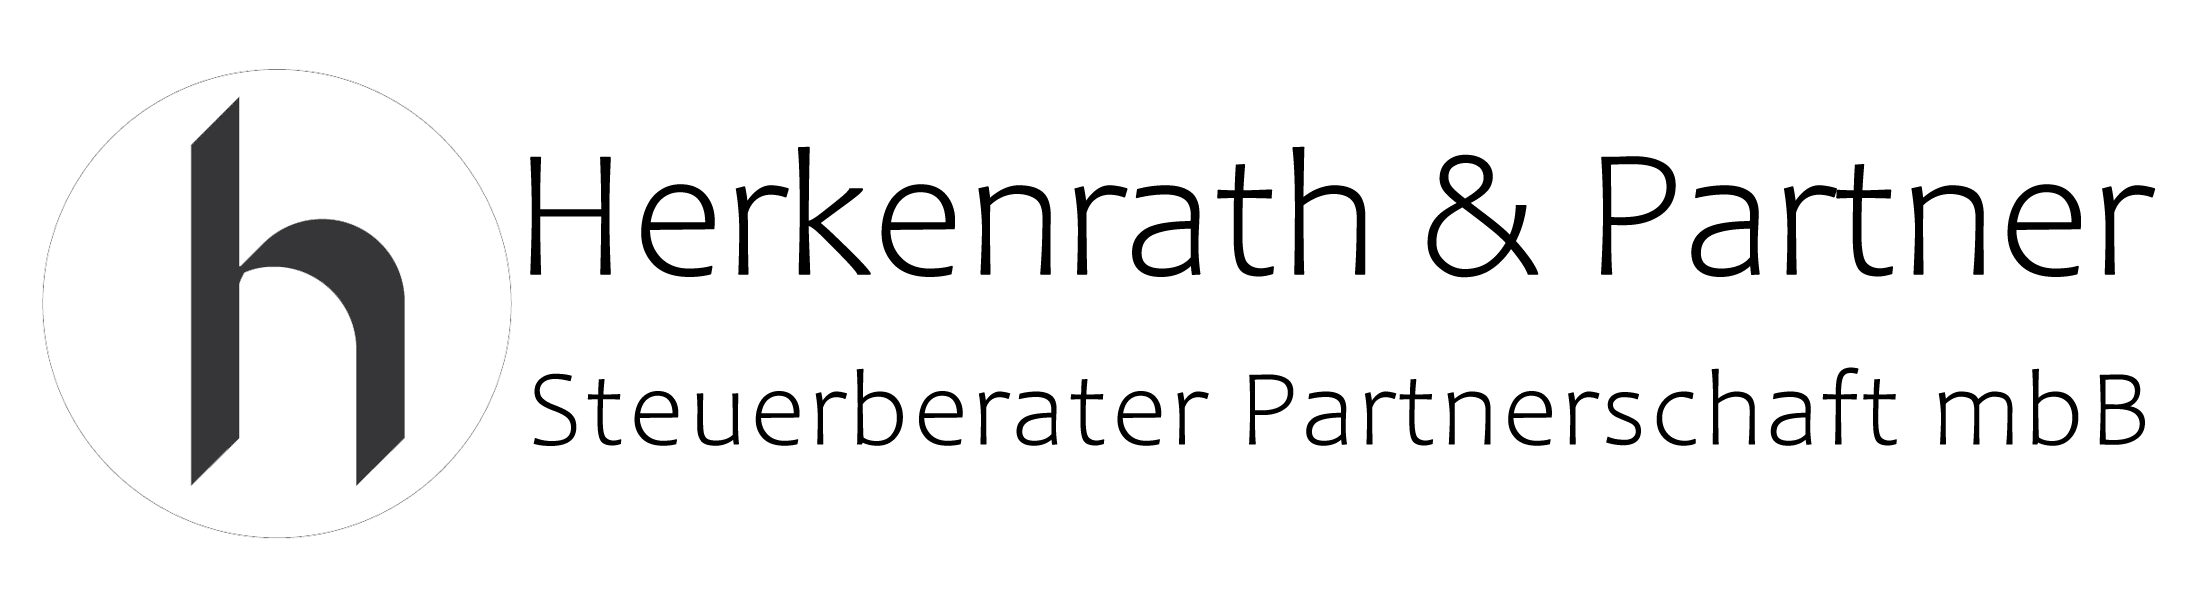 Logo Herkenrath Steuerberatungspartnerschaft mbB